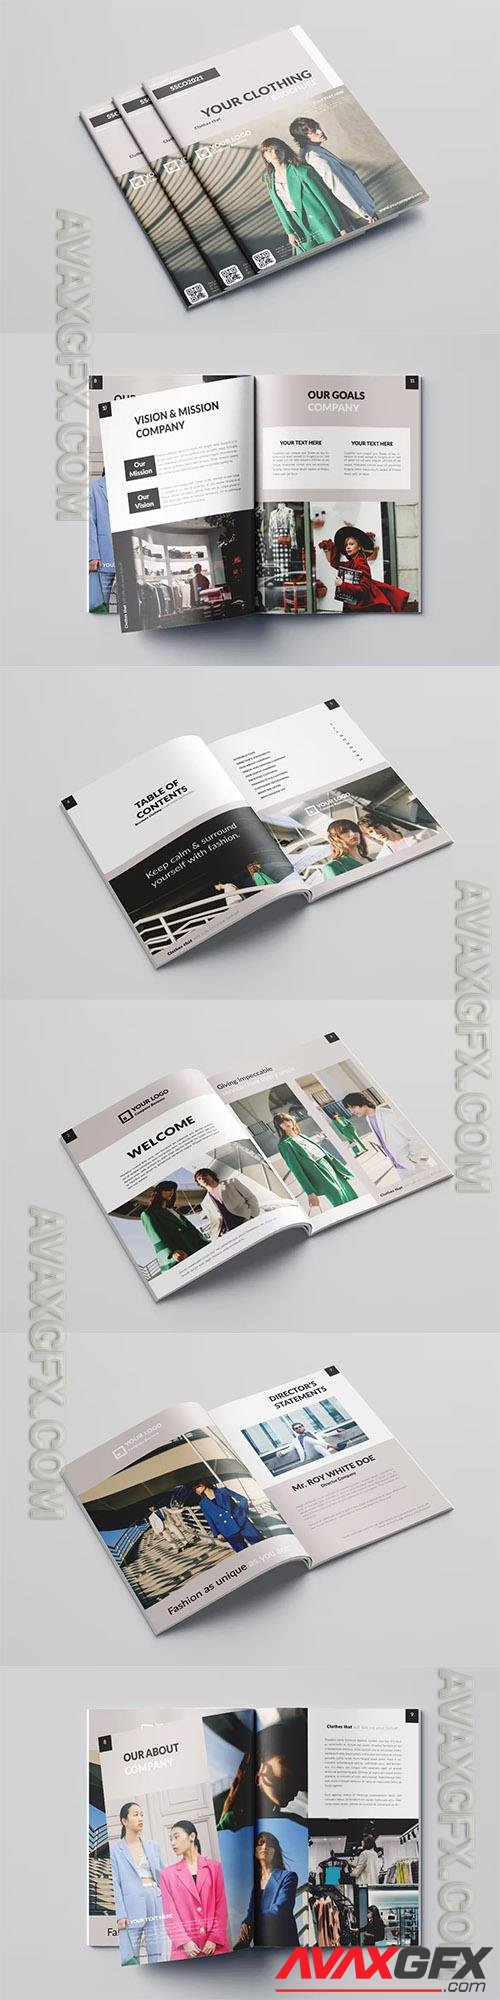 Fashion Clothing Brochure Vol.5 JS35NXN